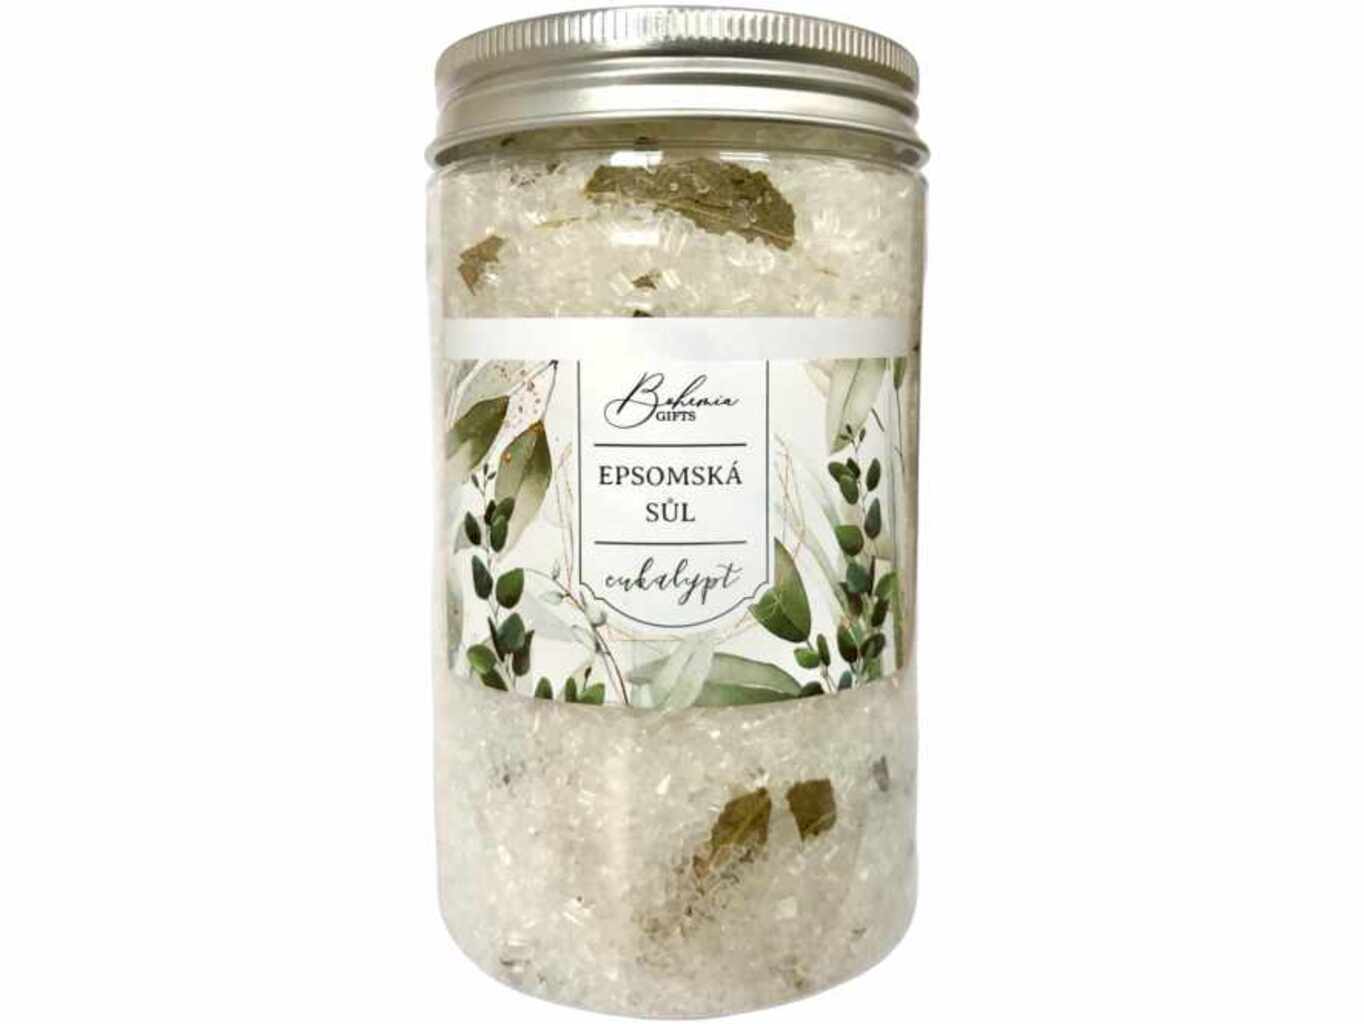 Bohemia Natur koupelová sůl s bylinkami relaxační s eukaliptem 400 g